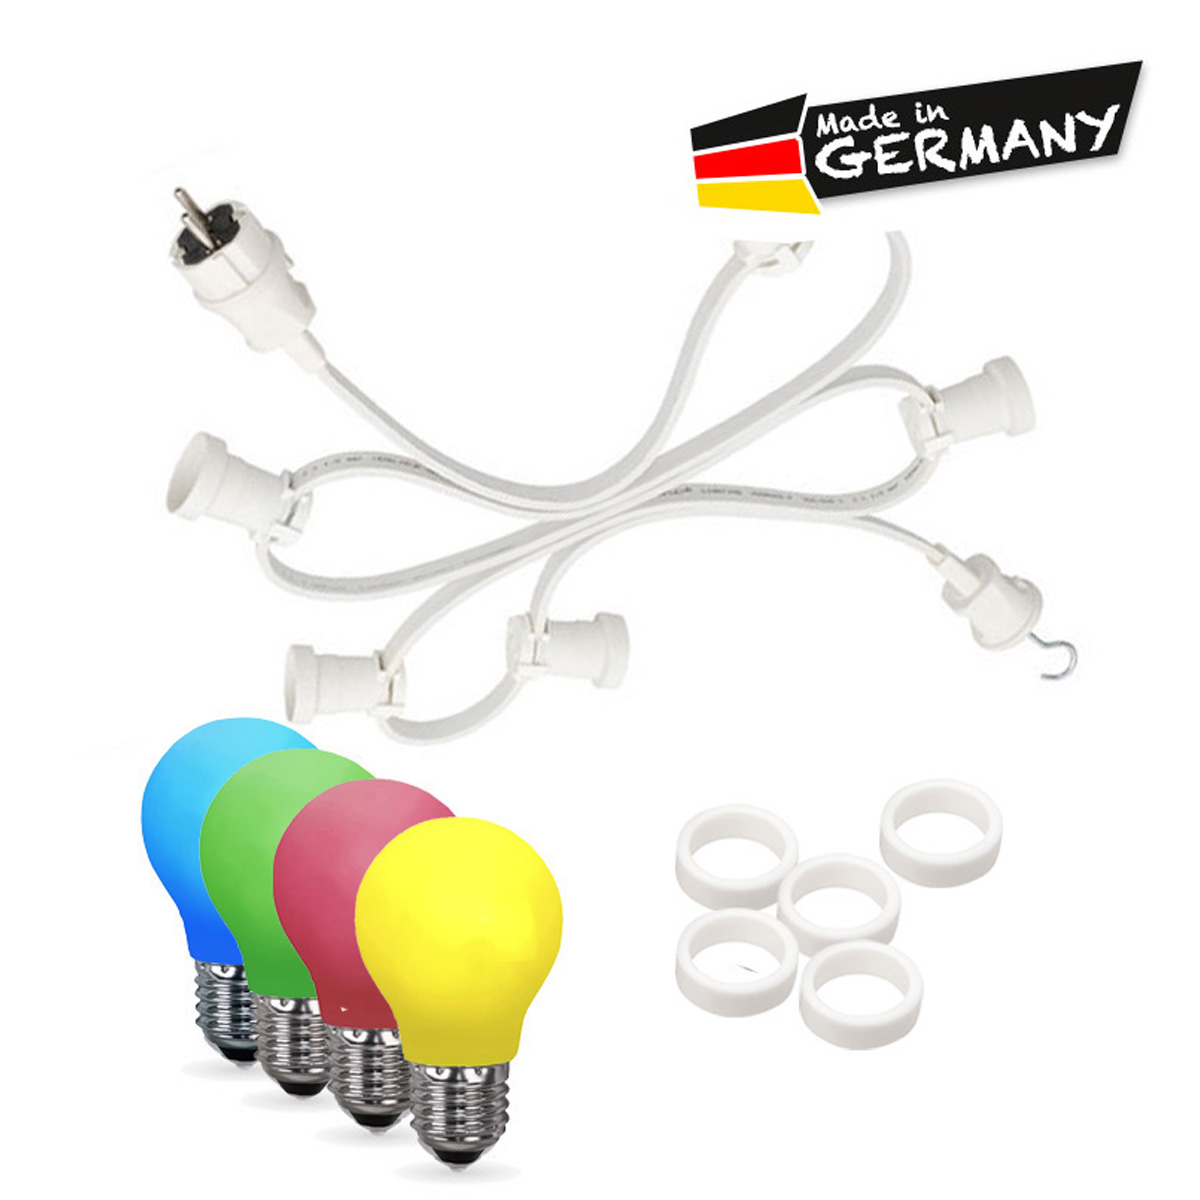 Illu-/Partylichterkette 30m | Außenlichterkette weiß | Made in Germany | 30 x bunte LED Tropfenlampe